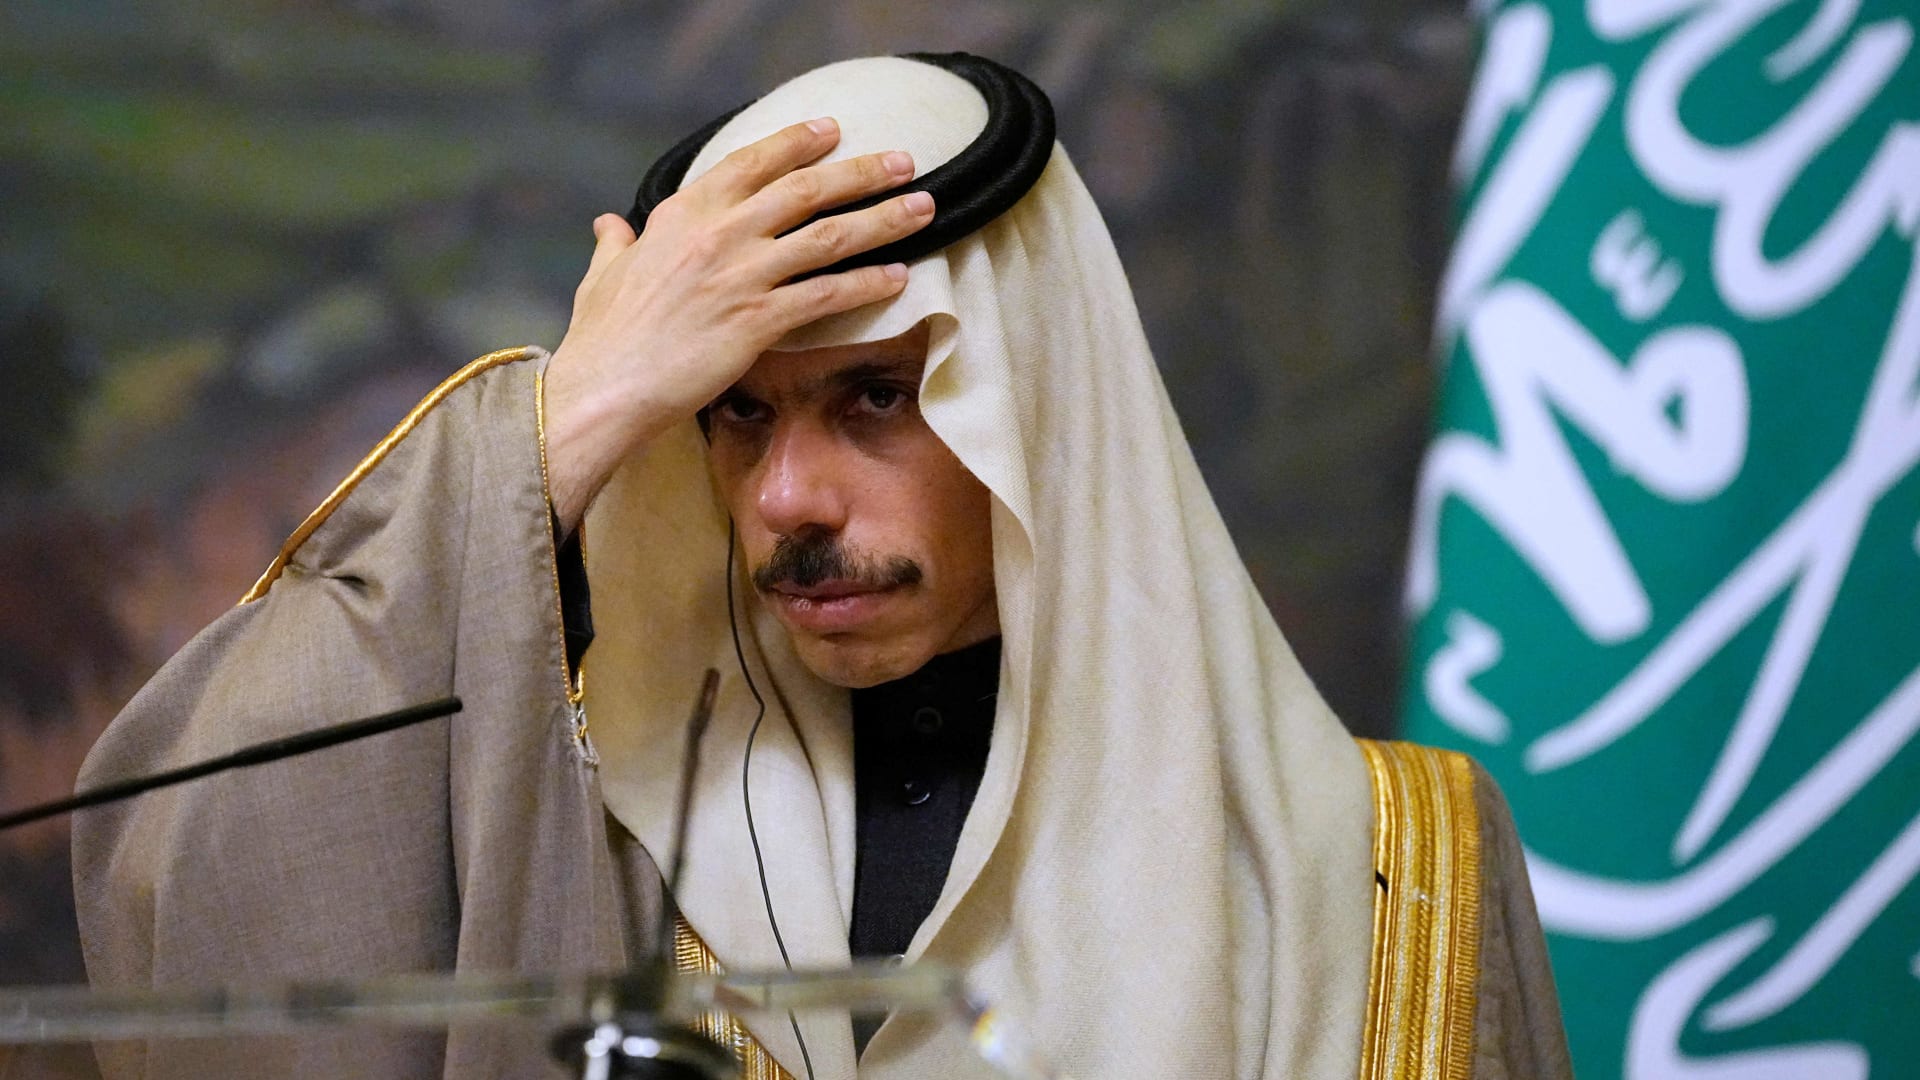 تفاعل على تصريح وزير خارجية السعودية عن لبنان بعد إعلان الاتفاق مع إيران